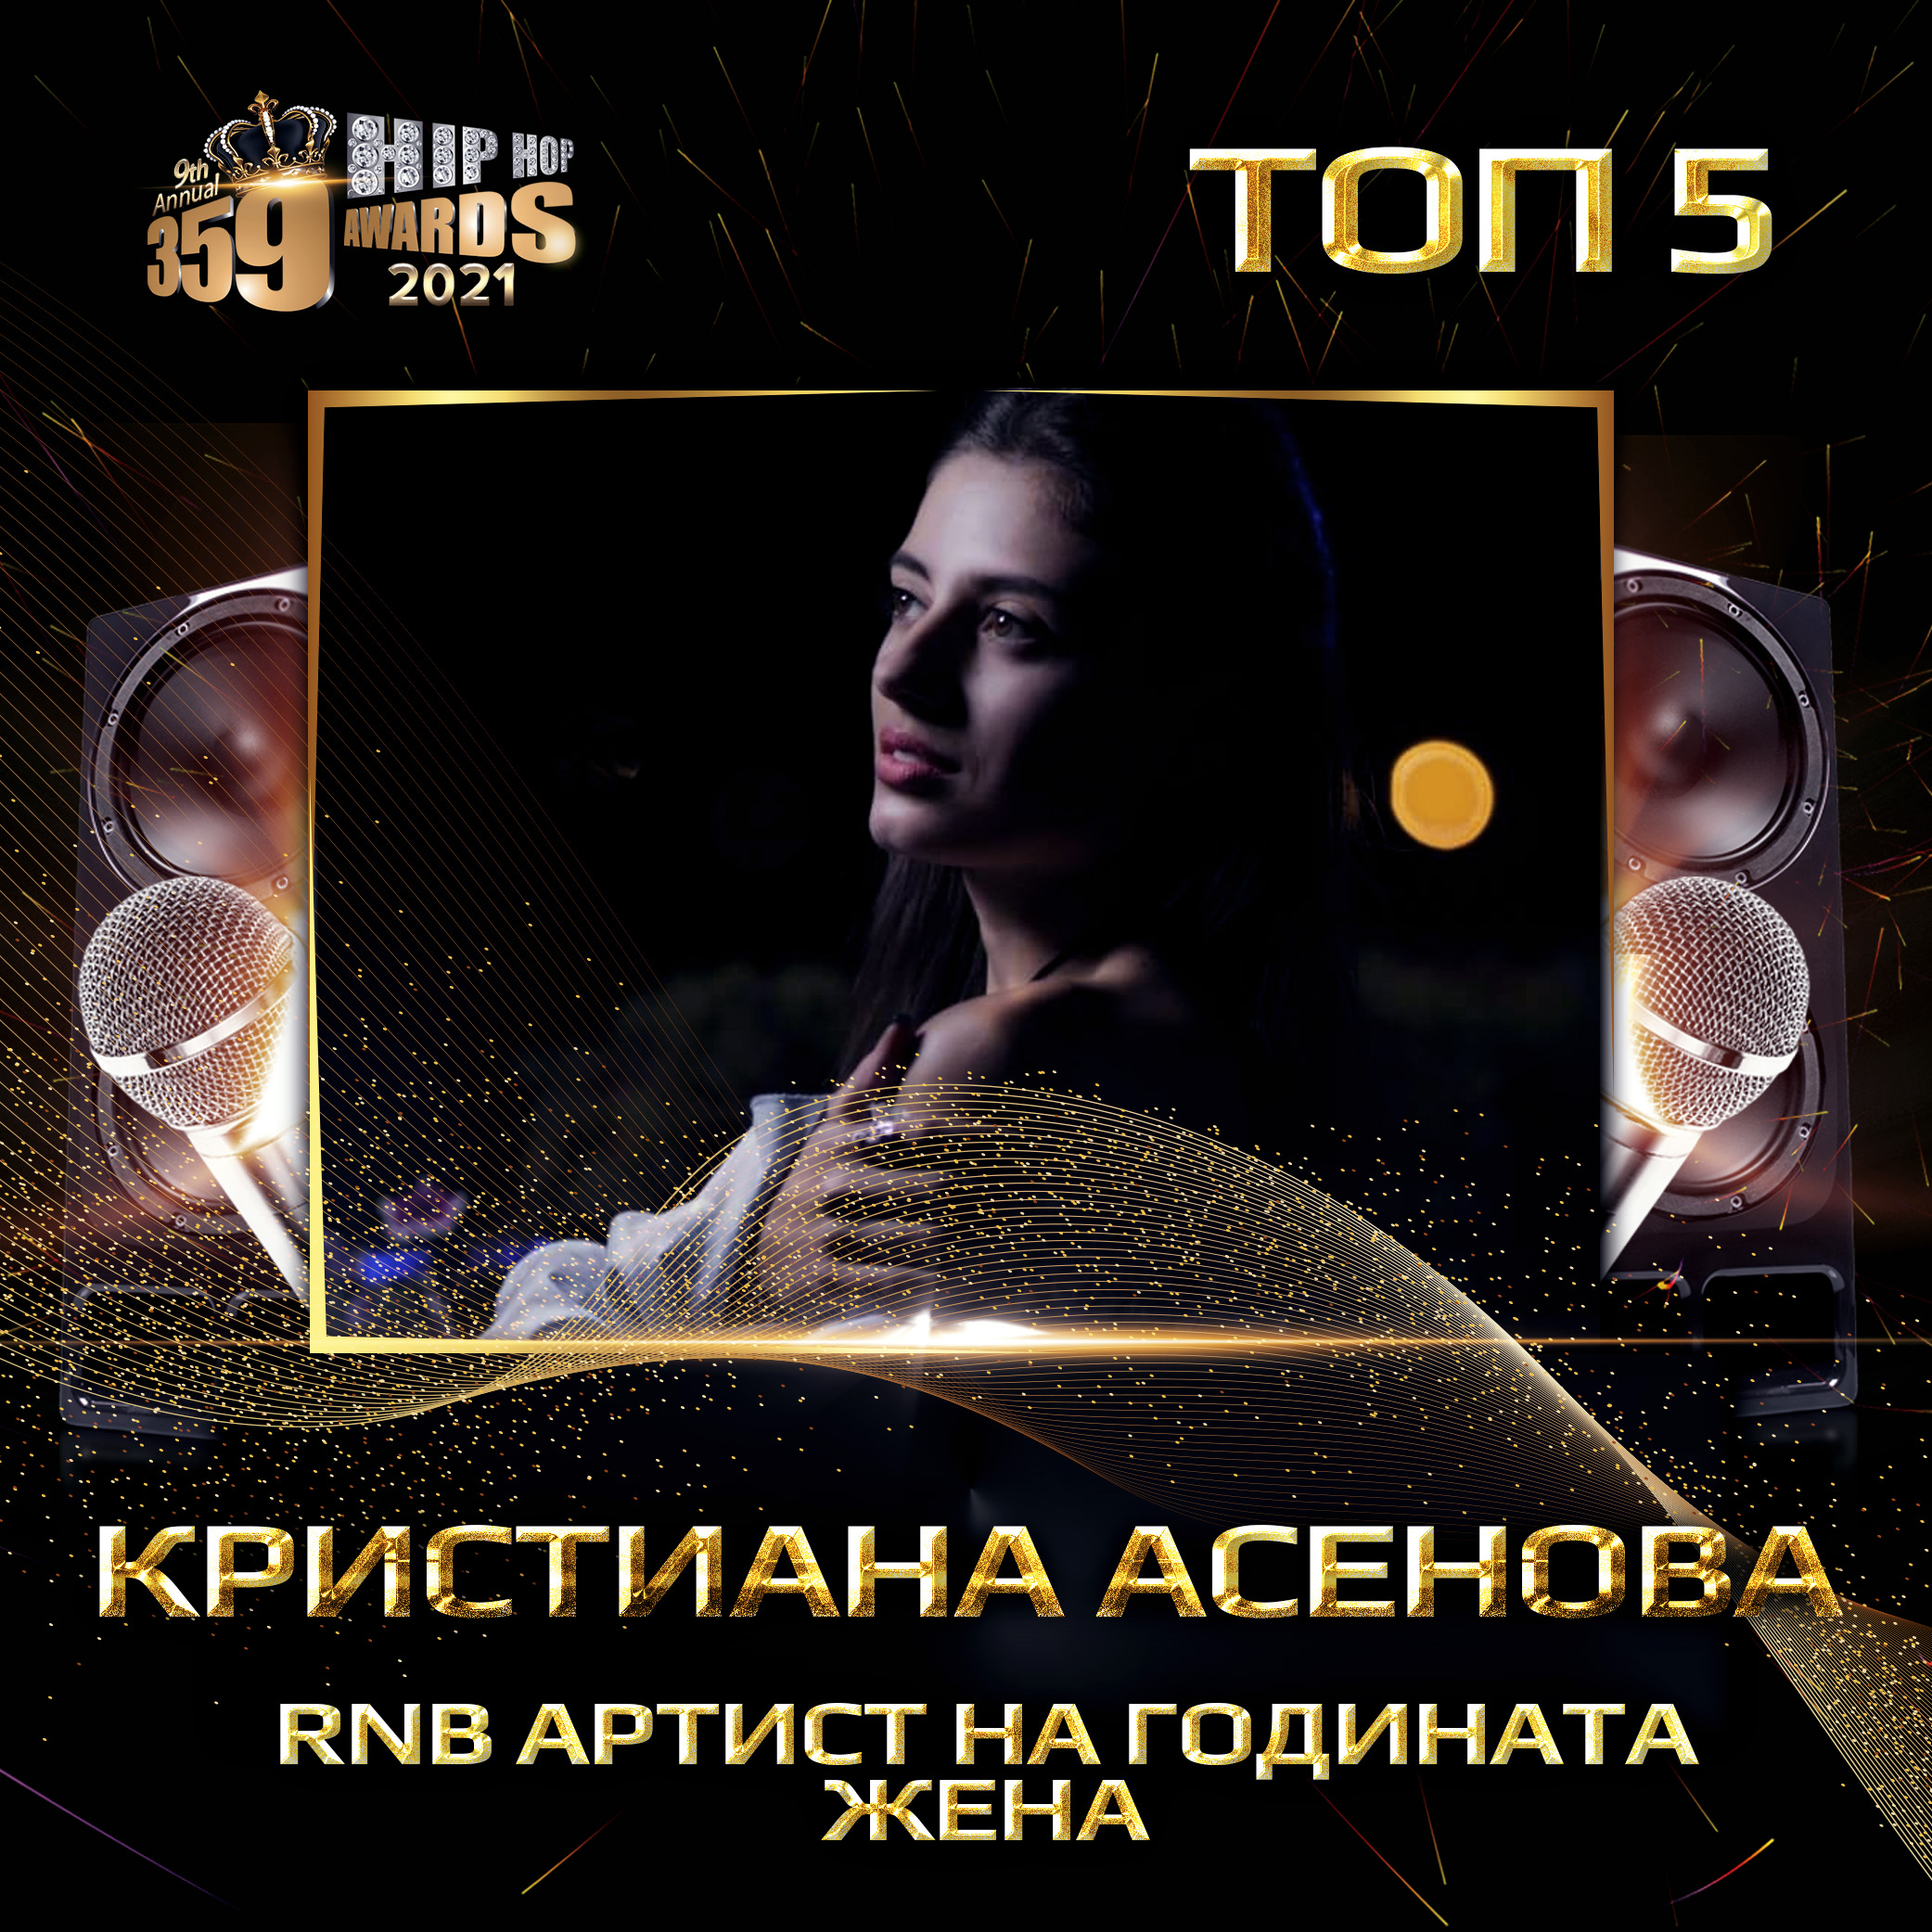 top 5  359 awards 2021  rnb artist na godinata zhena kristijana asenova 1 1 - Най-добър RNB артист 2020 / Жена